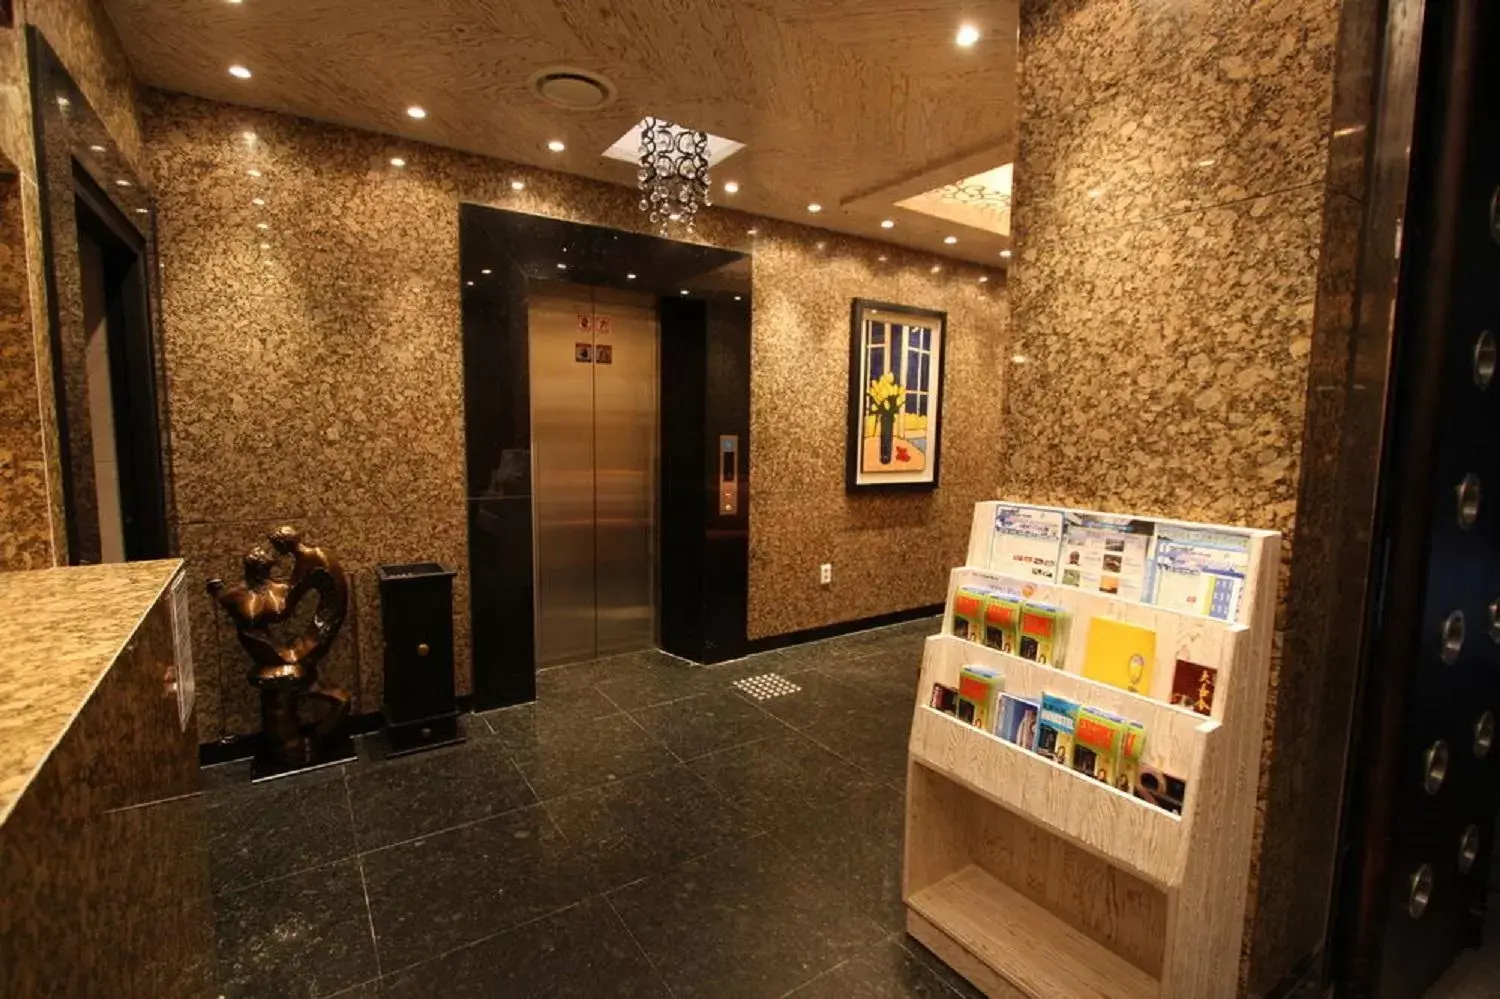 Lobby or reception in Hotel Star Gangnam